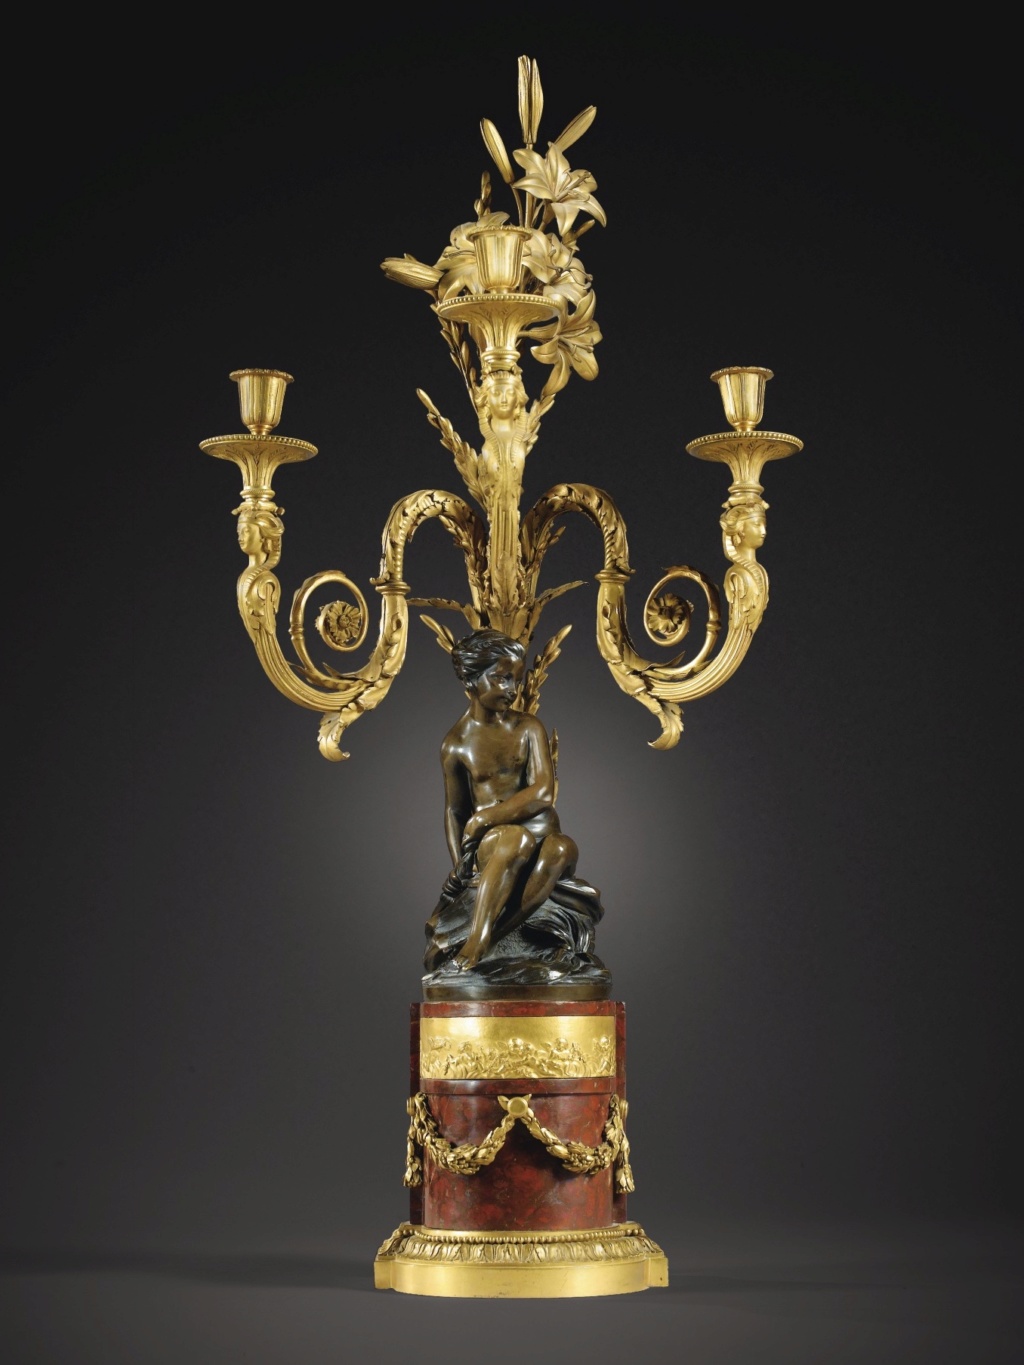 L'Amour menaçant de Falconet, l'oeuvre la plus reproduite au XVIIIe siècle et après ?  009pf111